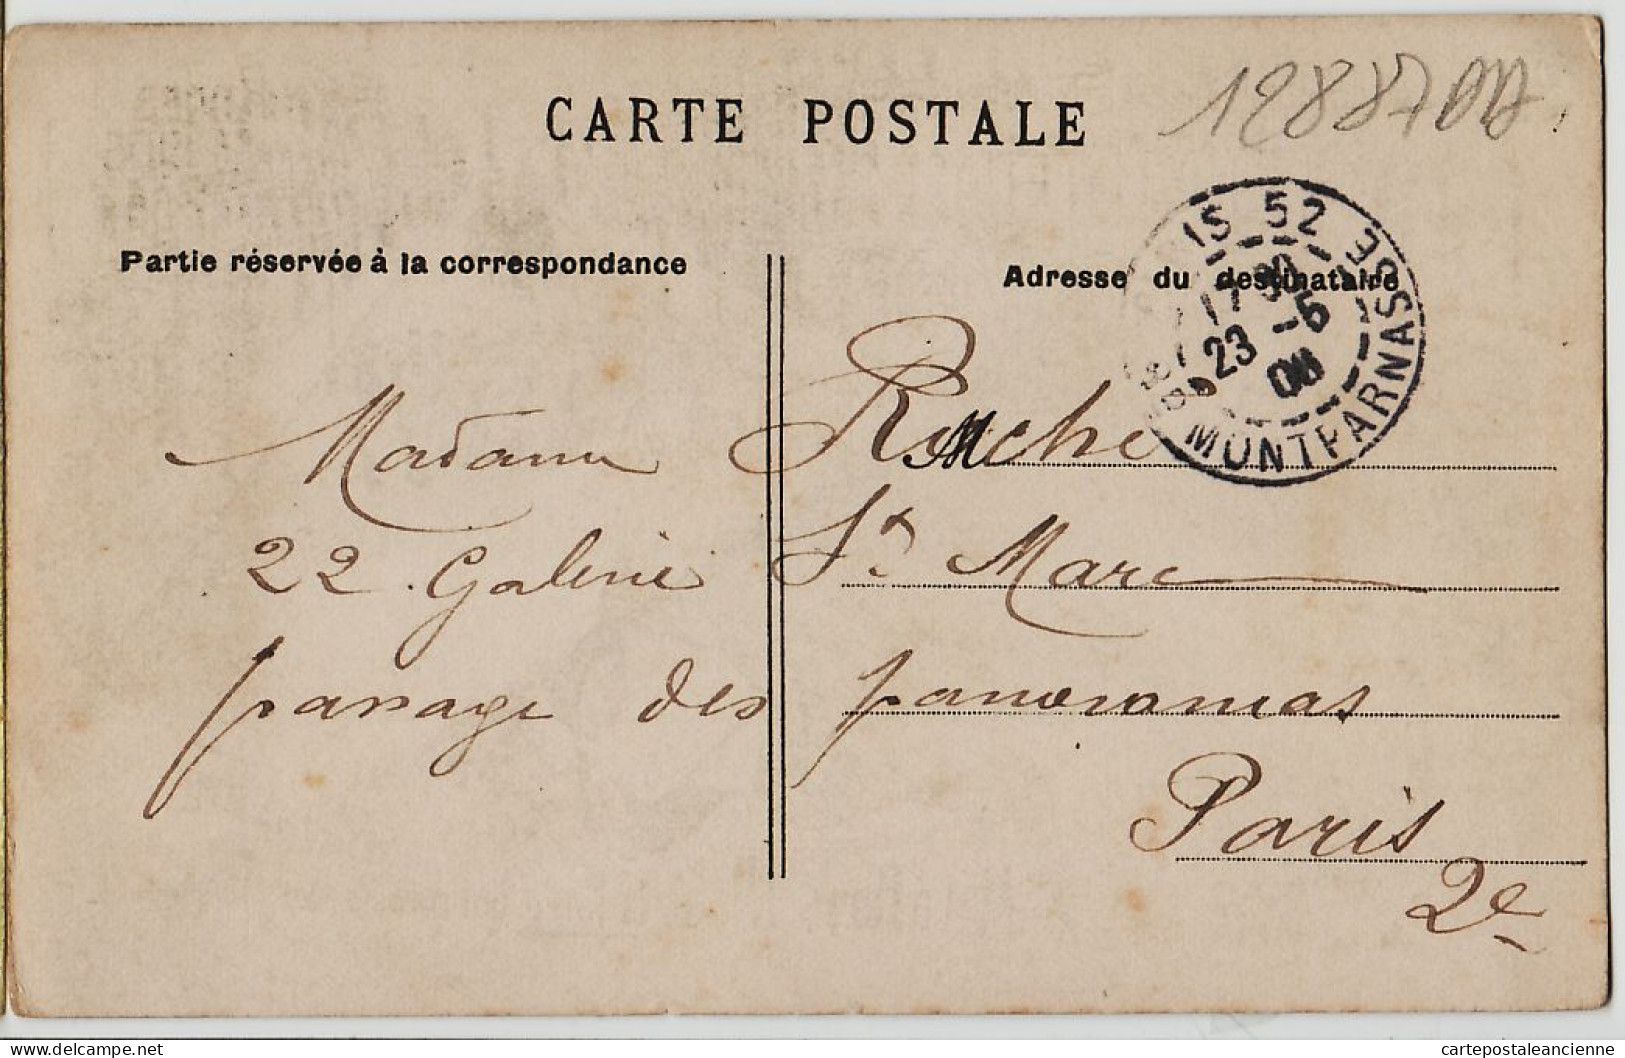 30907 / ⭐ ◉ FLEURY 18e Semaine Politique Satirique 1er Mai 1906 Foire Bourgeoise Des Jambons à ROCHE Galerie Saint Mars - Satiriques